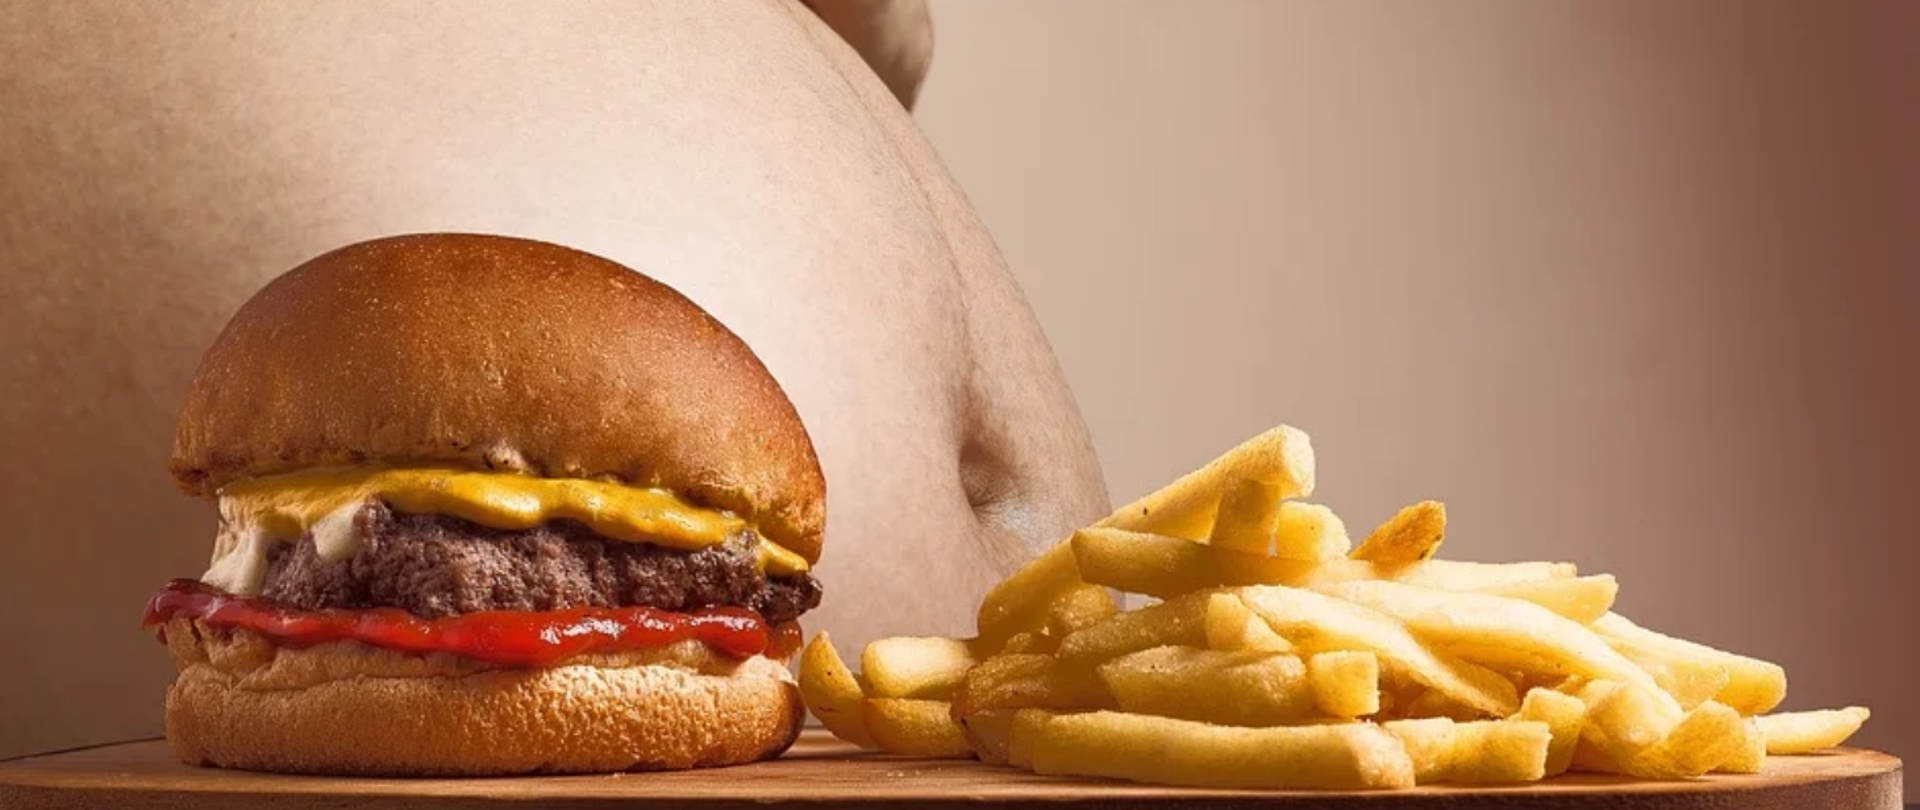 Obraz przedstawia duży brzuch otyłej osoby, przed którym na okrągłej desce wyeksponowany jest hamburger, obok leży porcja frytek